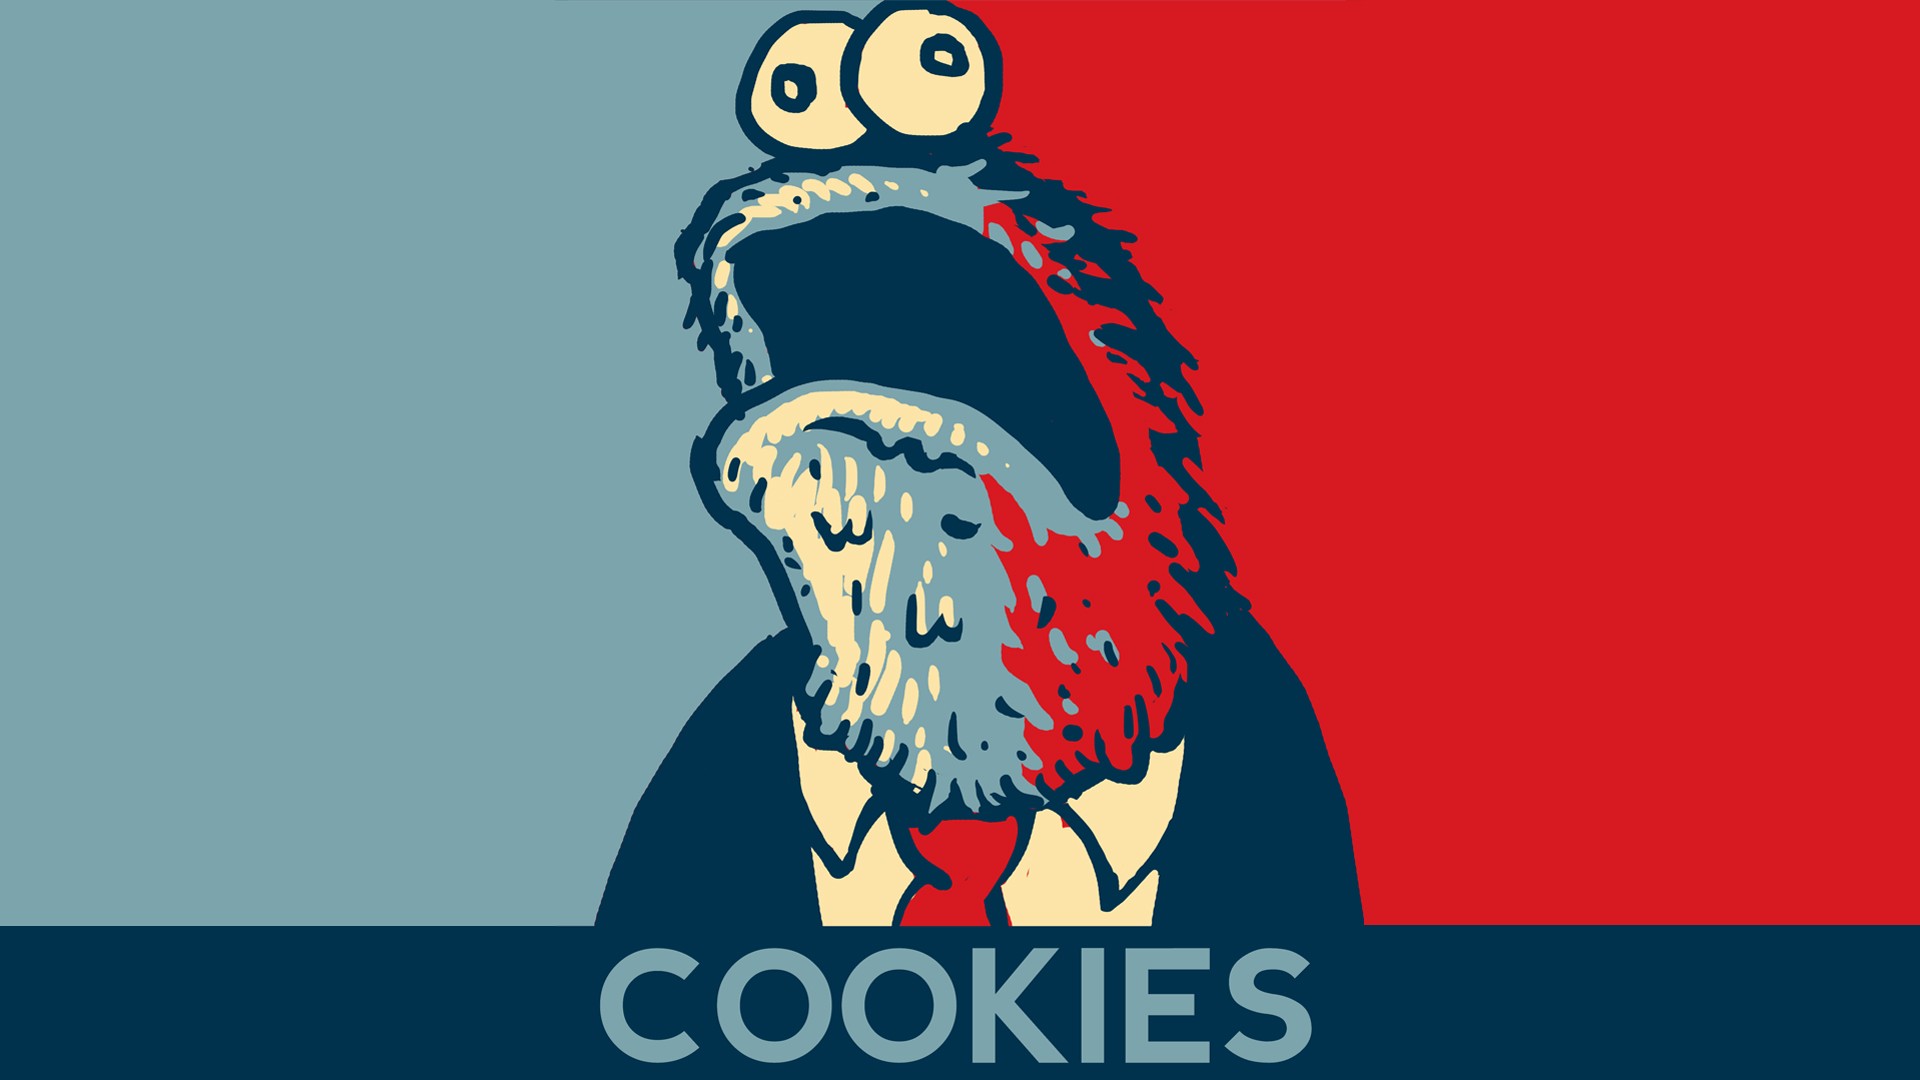 General 1920x1080 cookies presidents politics minimalism Hope posters Cookie Monster Sesame Street humor